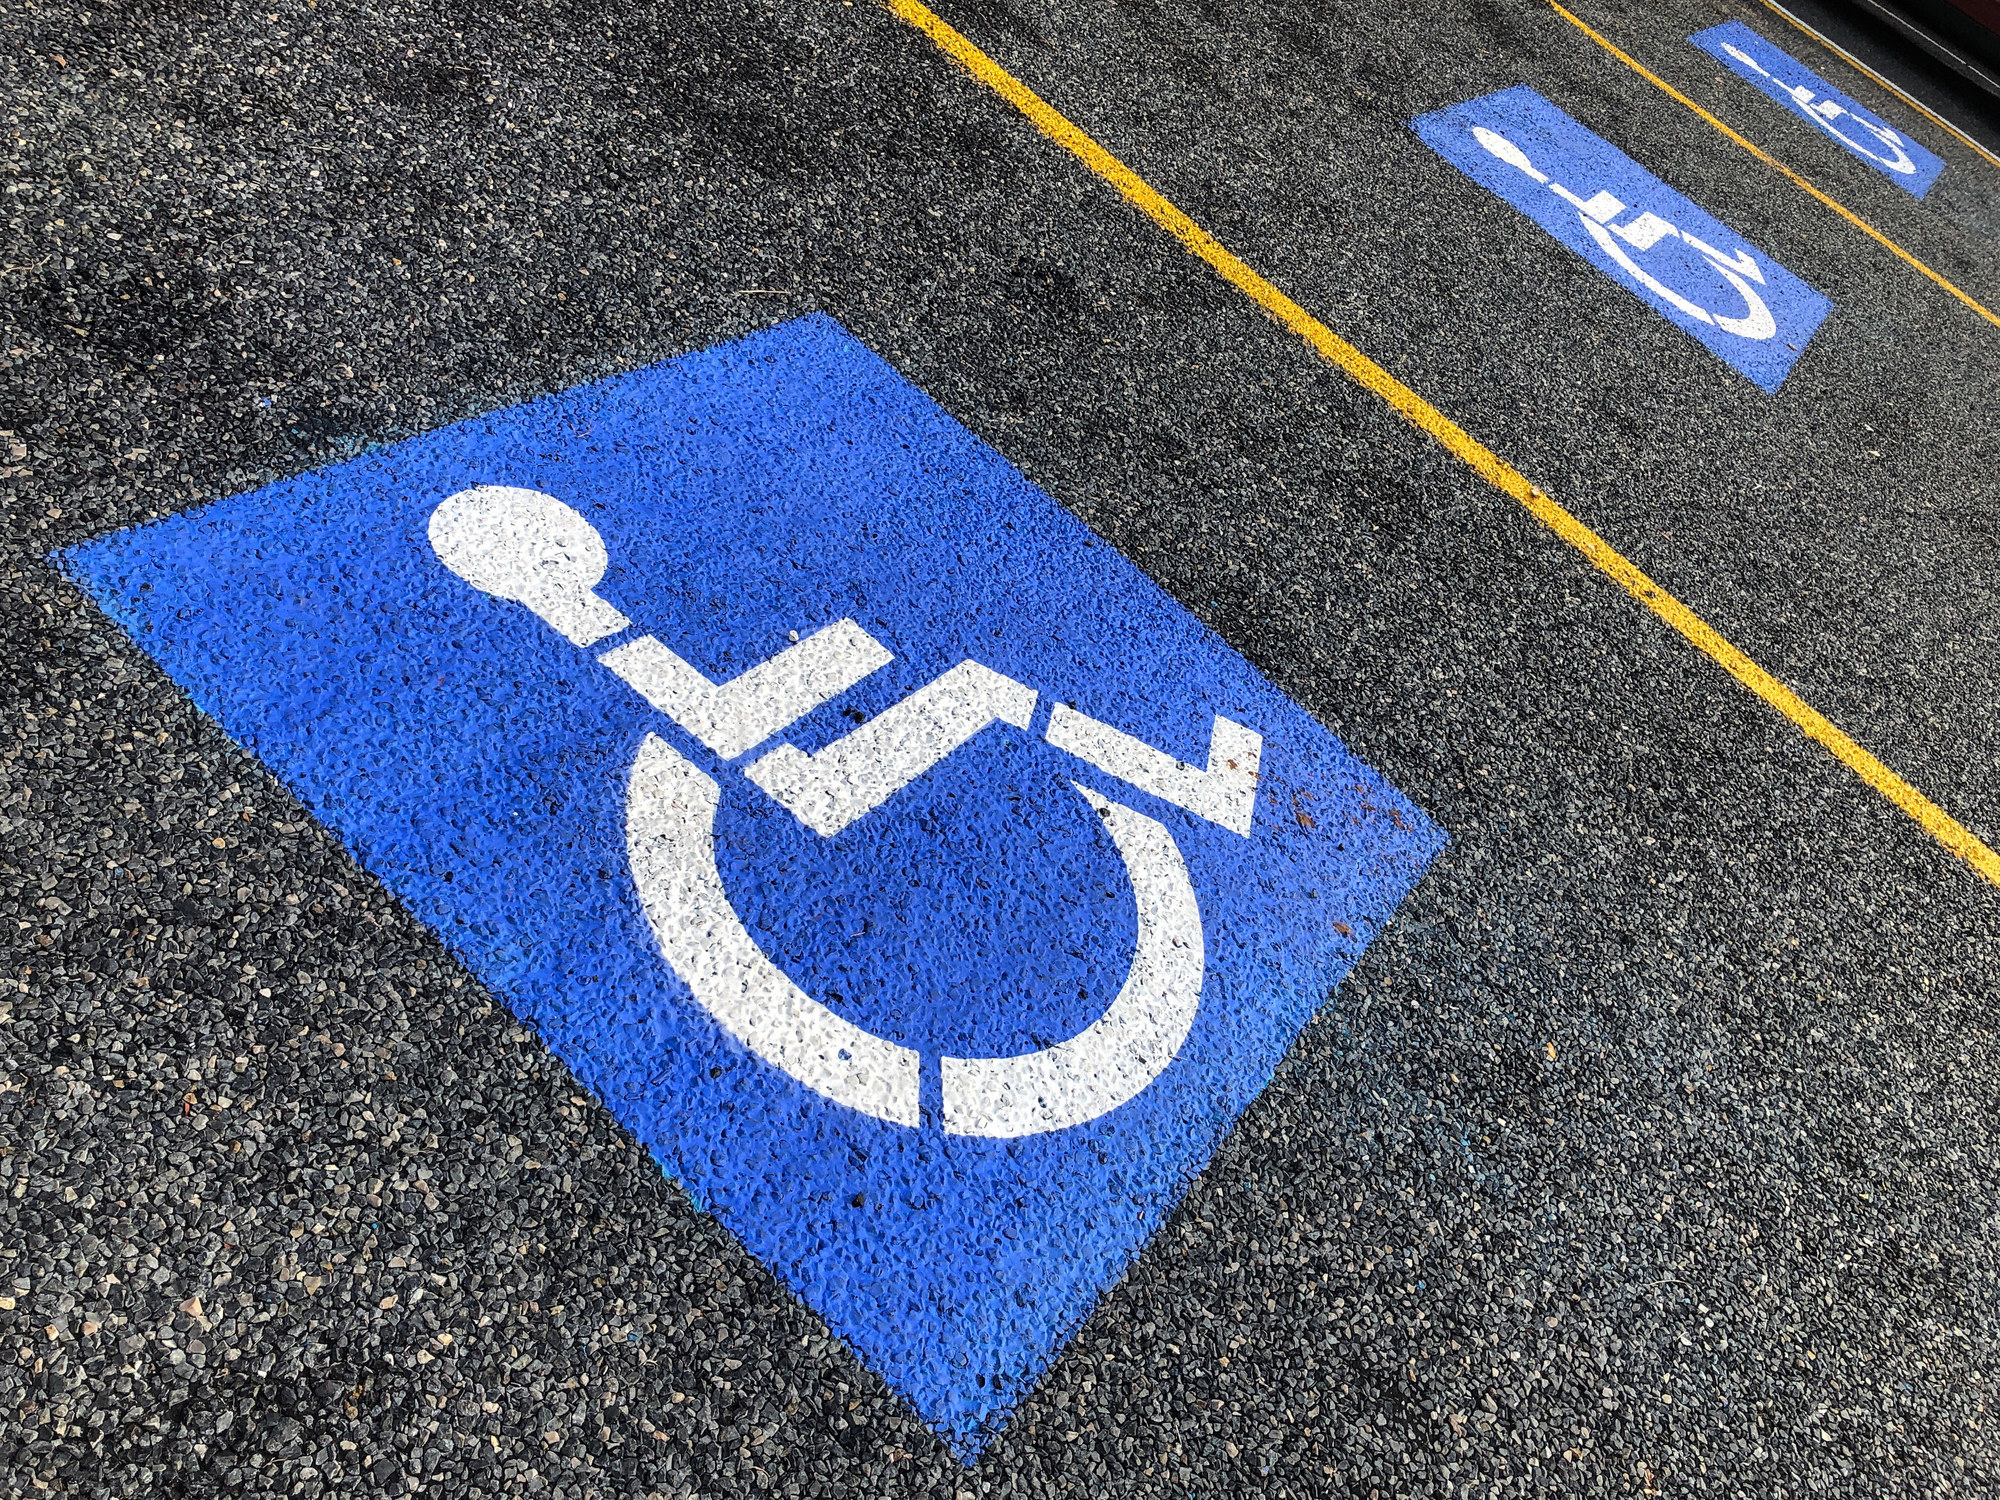 A handicap parking sign